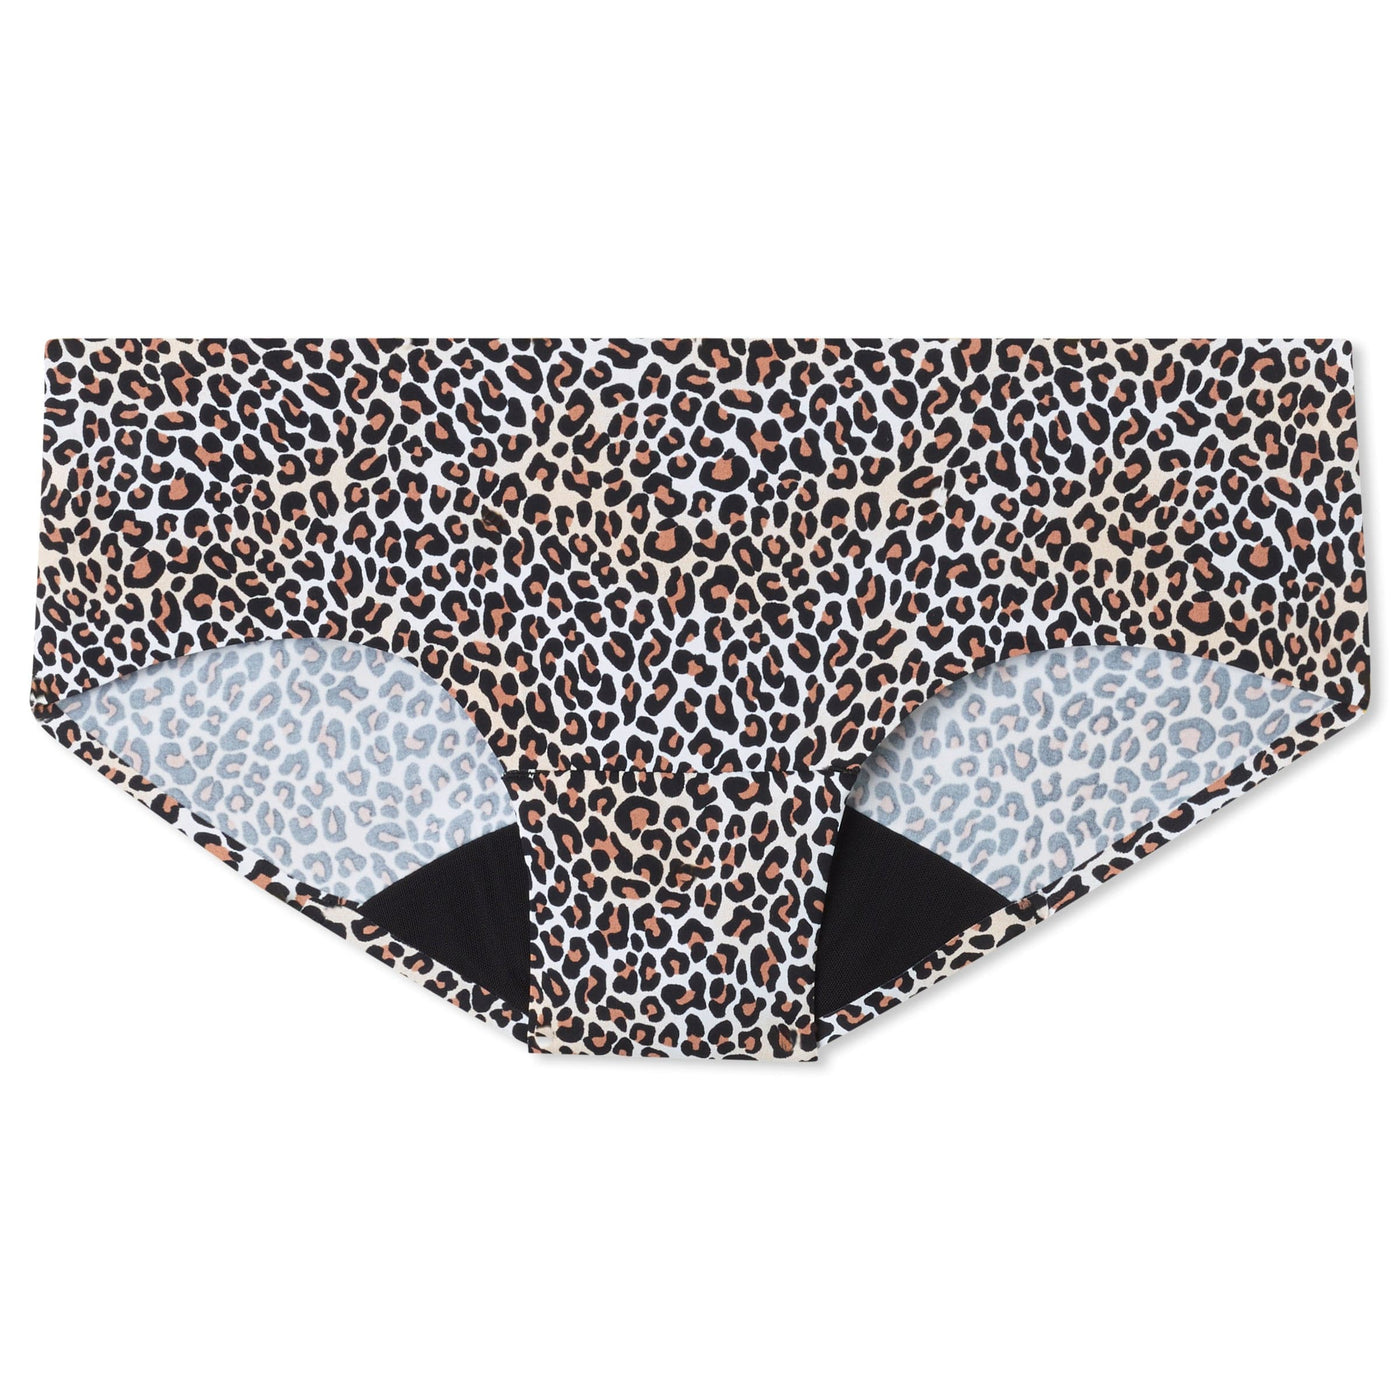 Women's Period Underwear - Hipster | Leopard